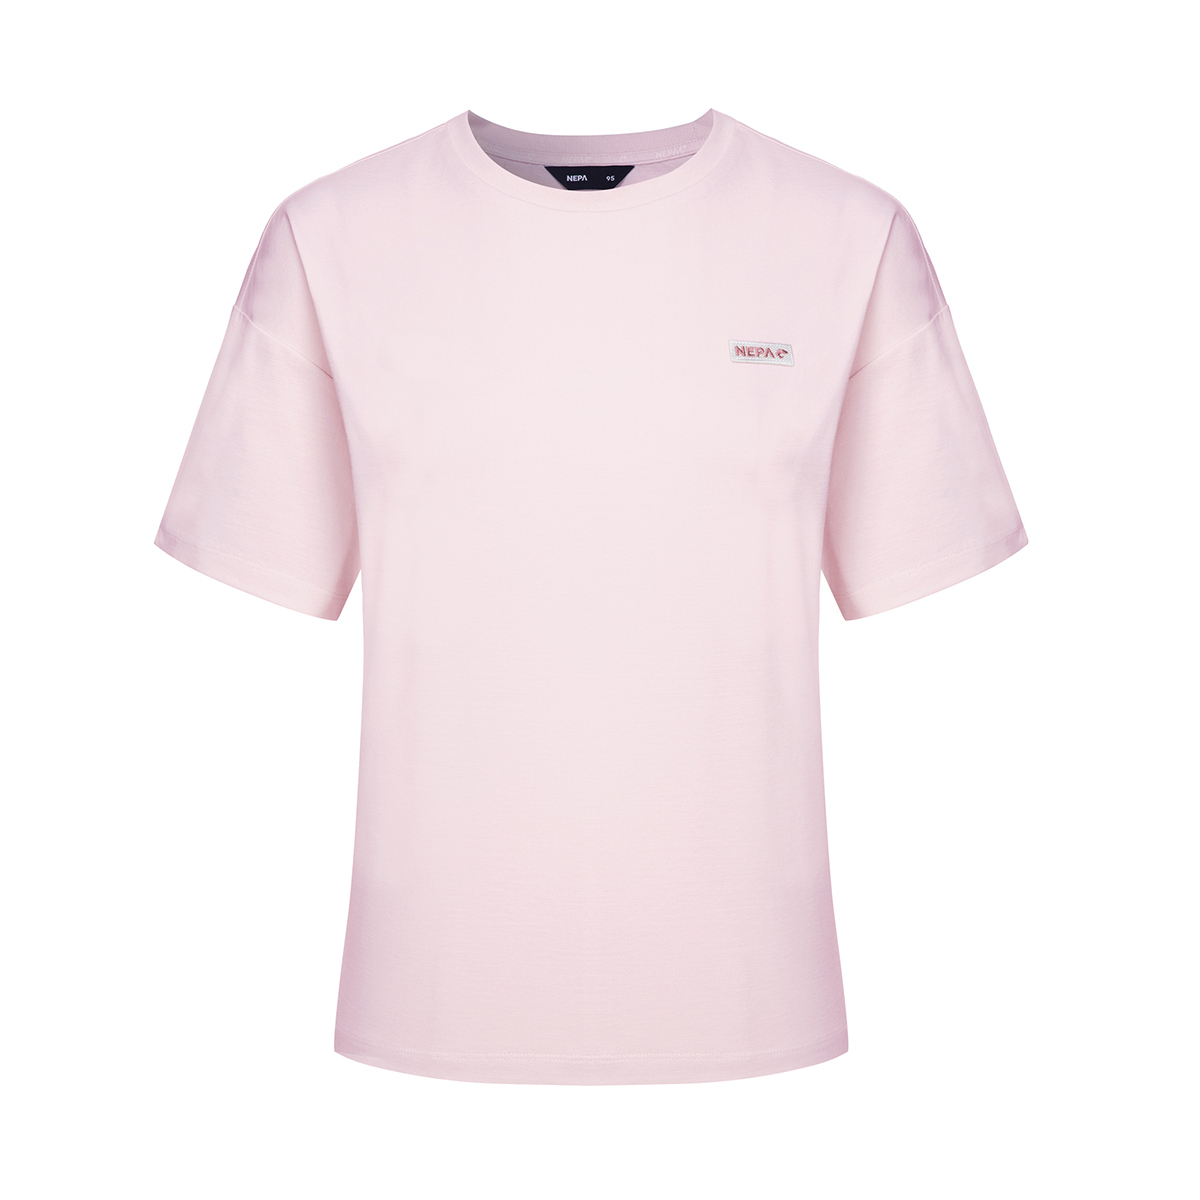 네파 여성 세미 크롭 티셔츠 - 핑크